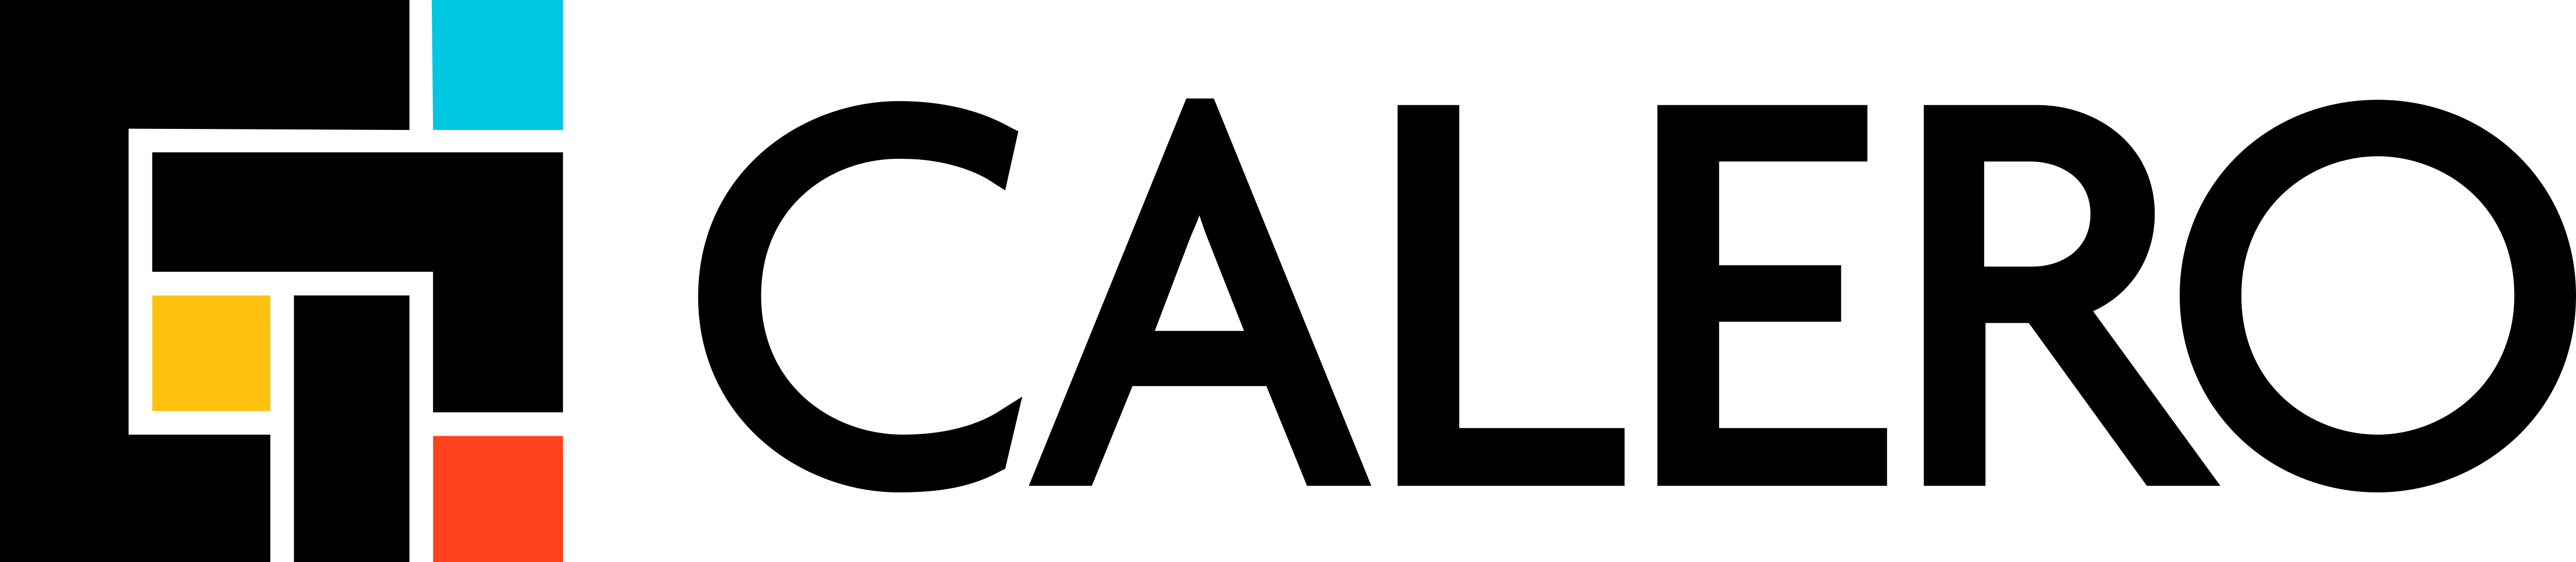 Calero_Logo